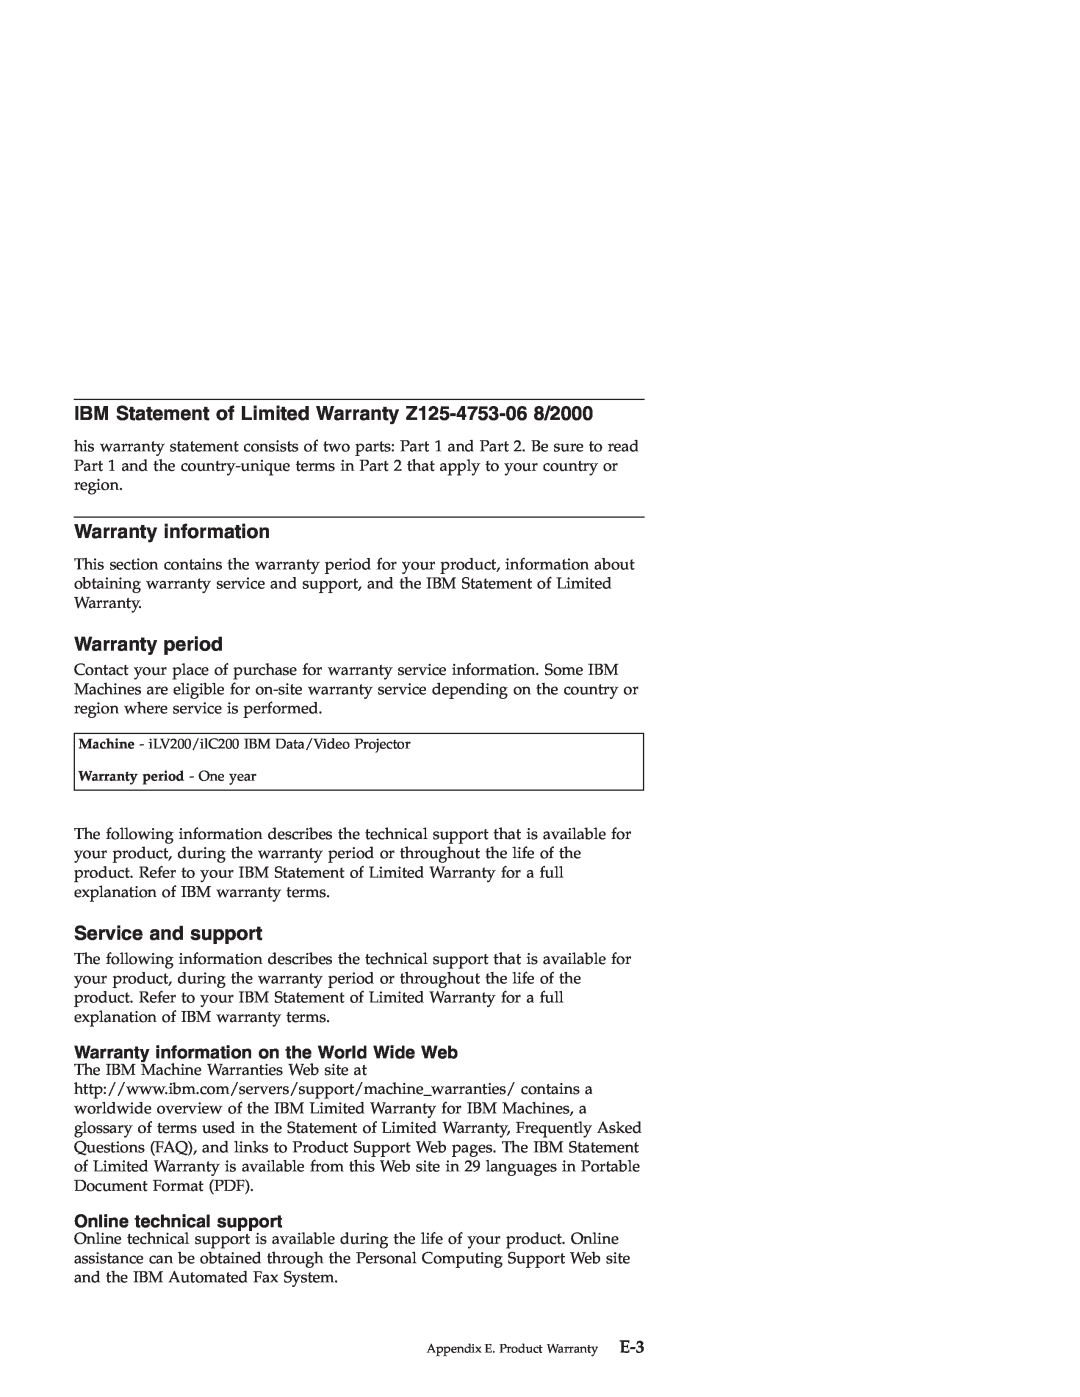 IBM ILC200, ILV200 manual IBM Statement of Limited Warranty Z125-4753-06 8/2000, Warranty information, Warranty period 